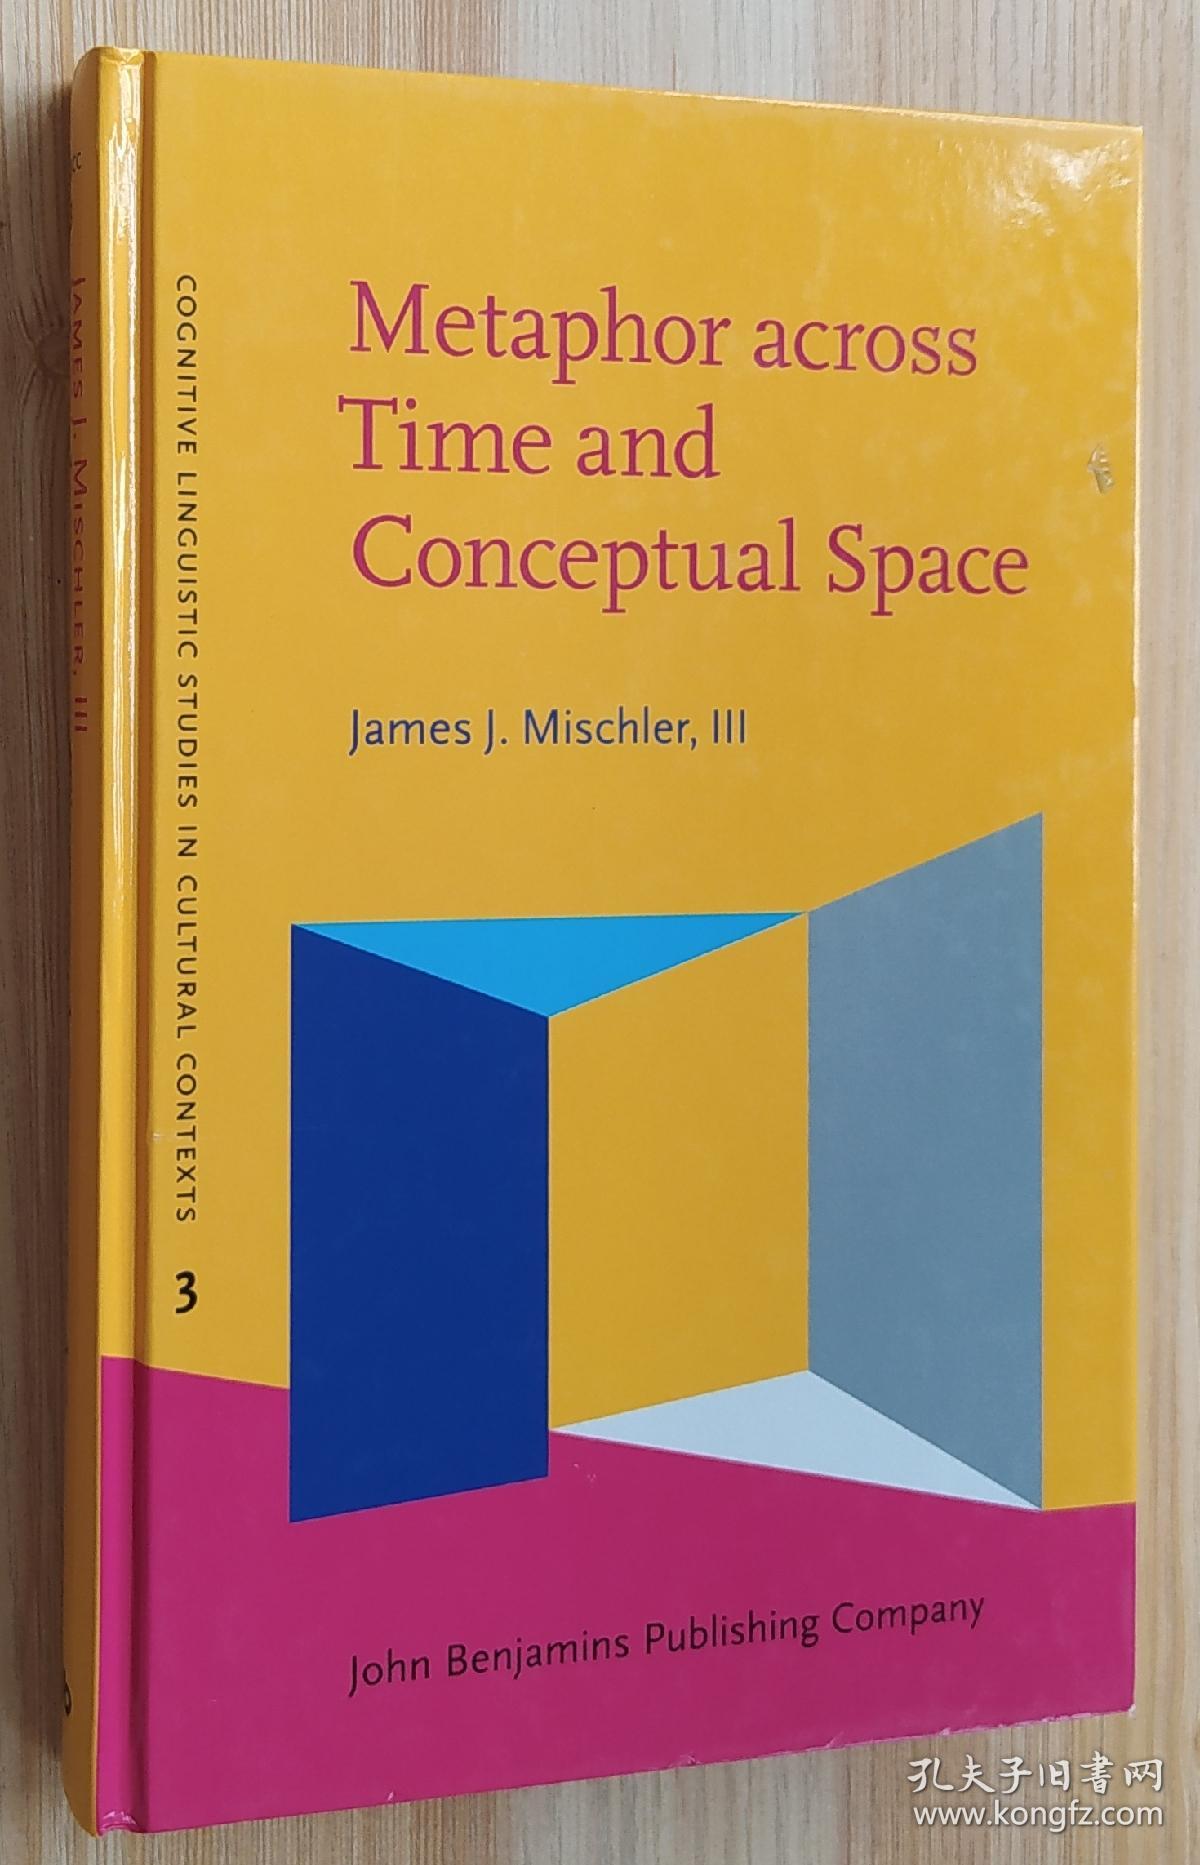 英文书 Metaphor across Time and Conceptual Space: The interplay of embodiment and cultural models (Cognitive Linguistic Studies in Cultural Contexts 3)   James J. Mischler III  (Author)